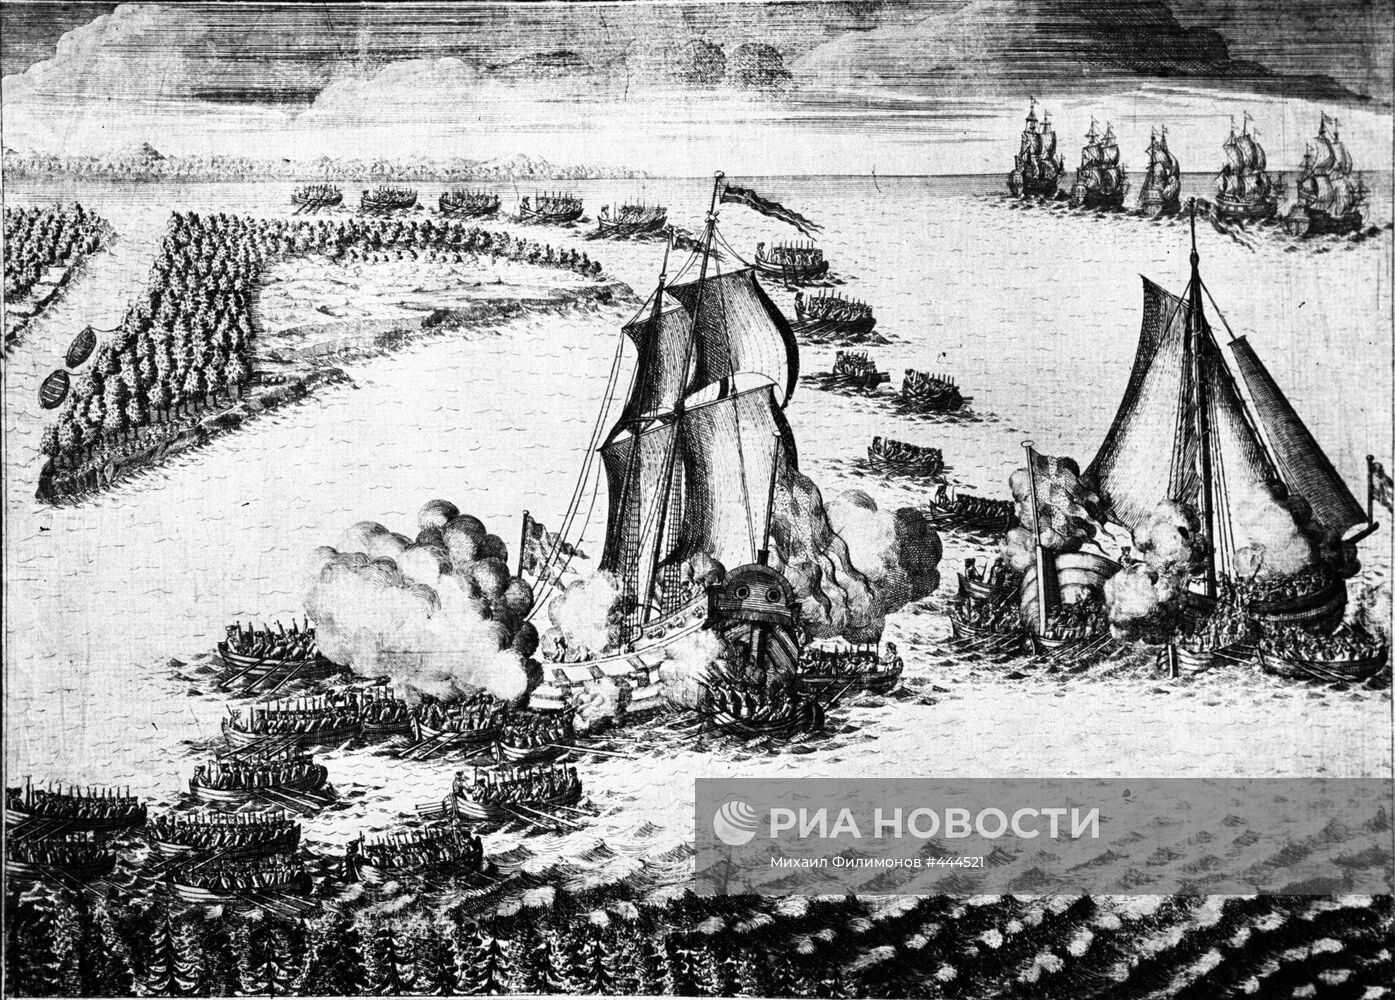 "Взятие в плен двух шведских судов в устье Невы 7 мая 1703 года"